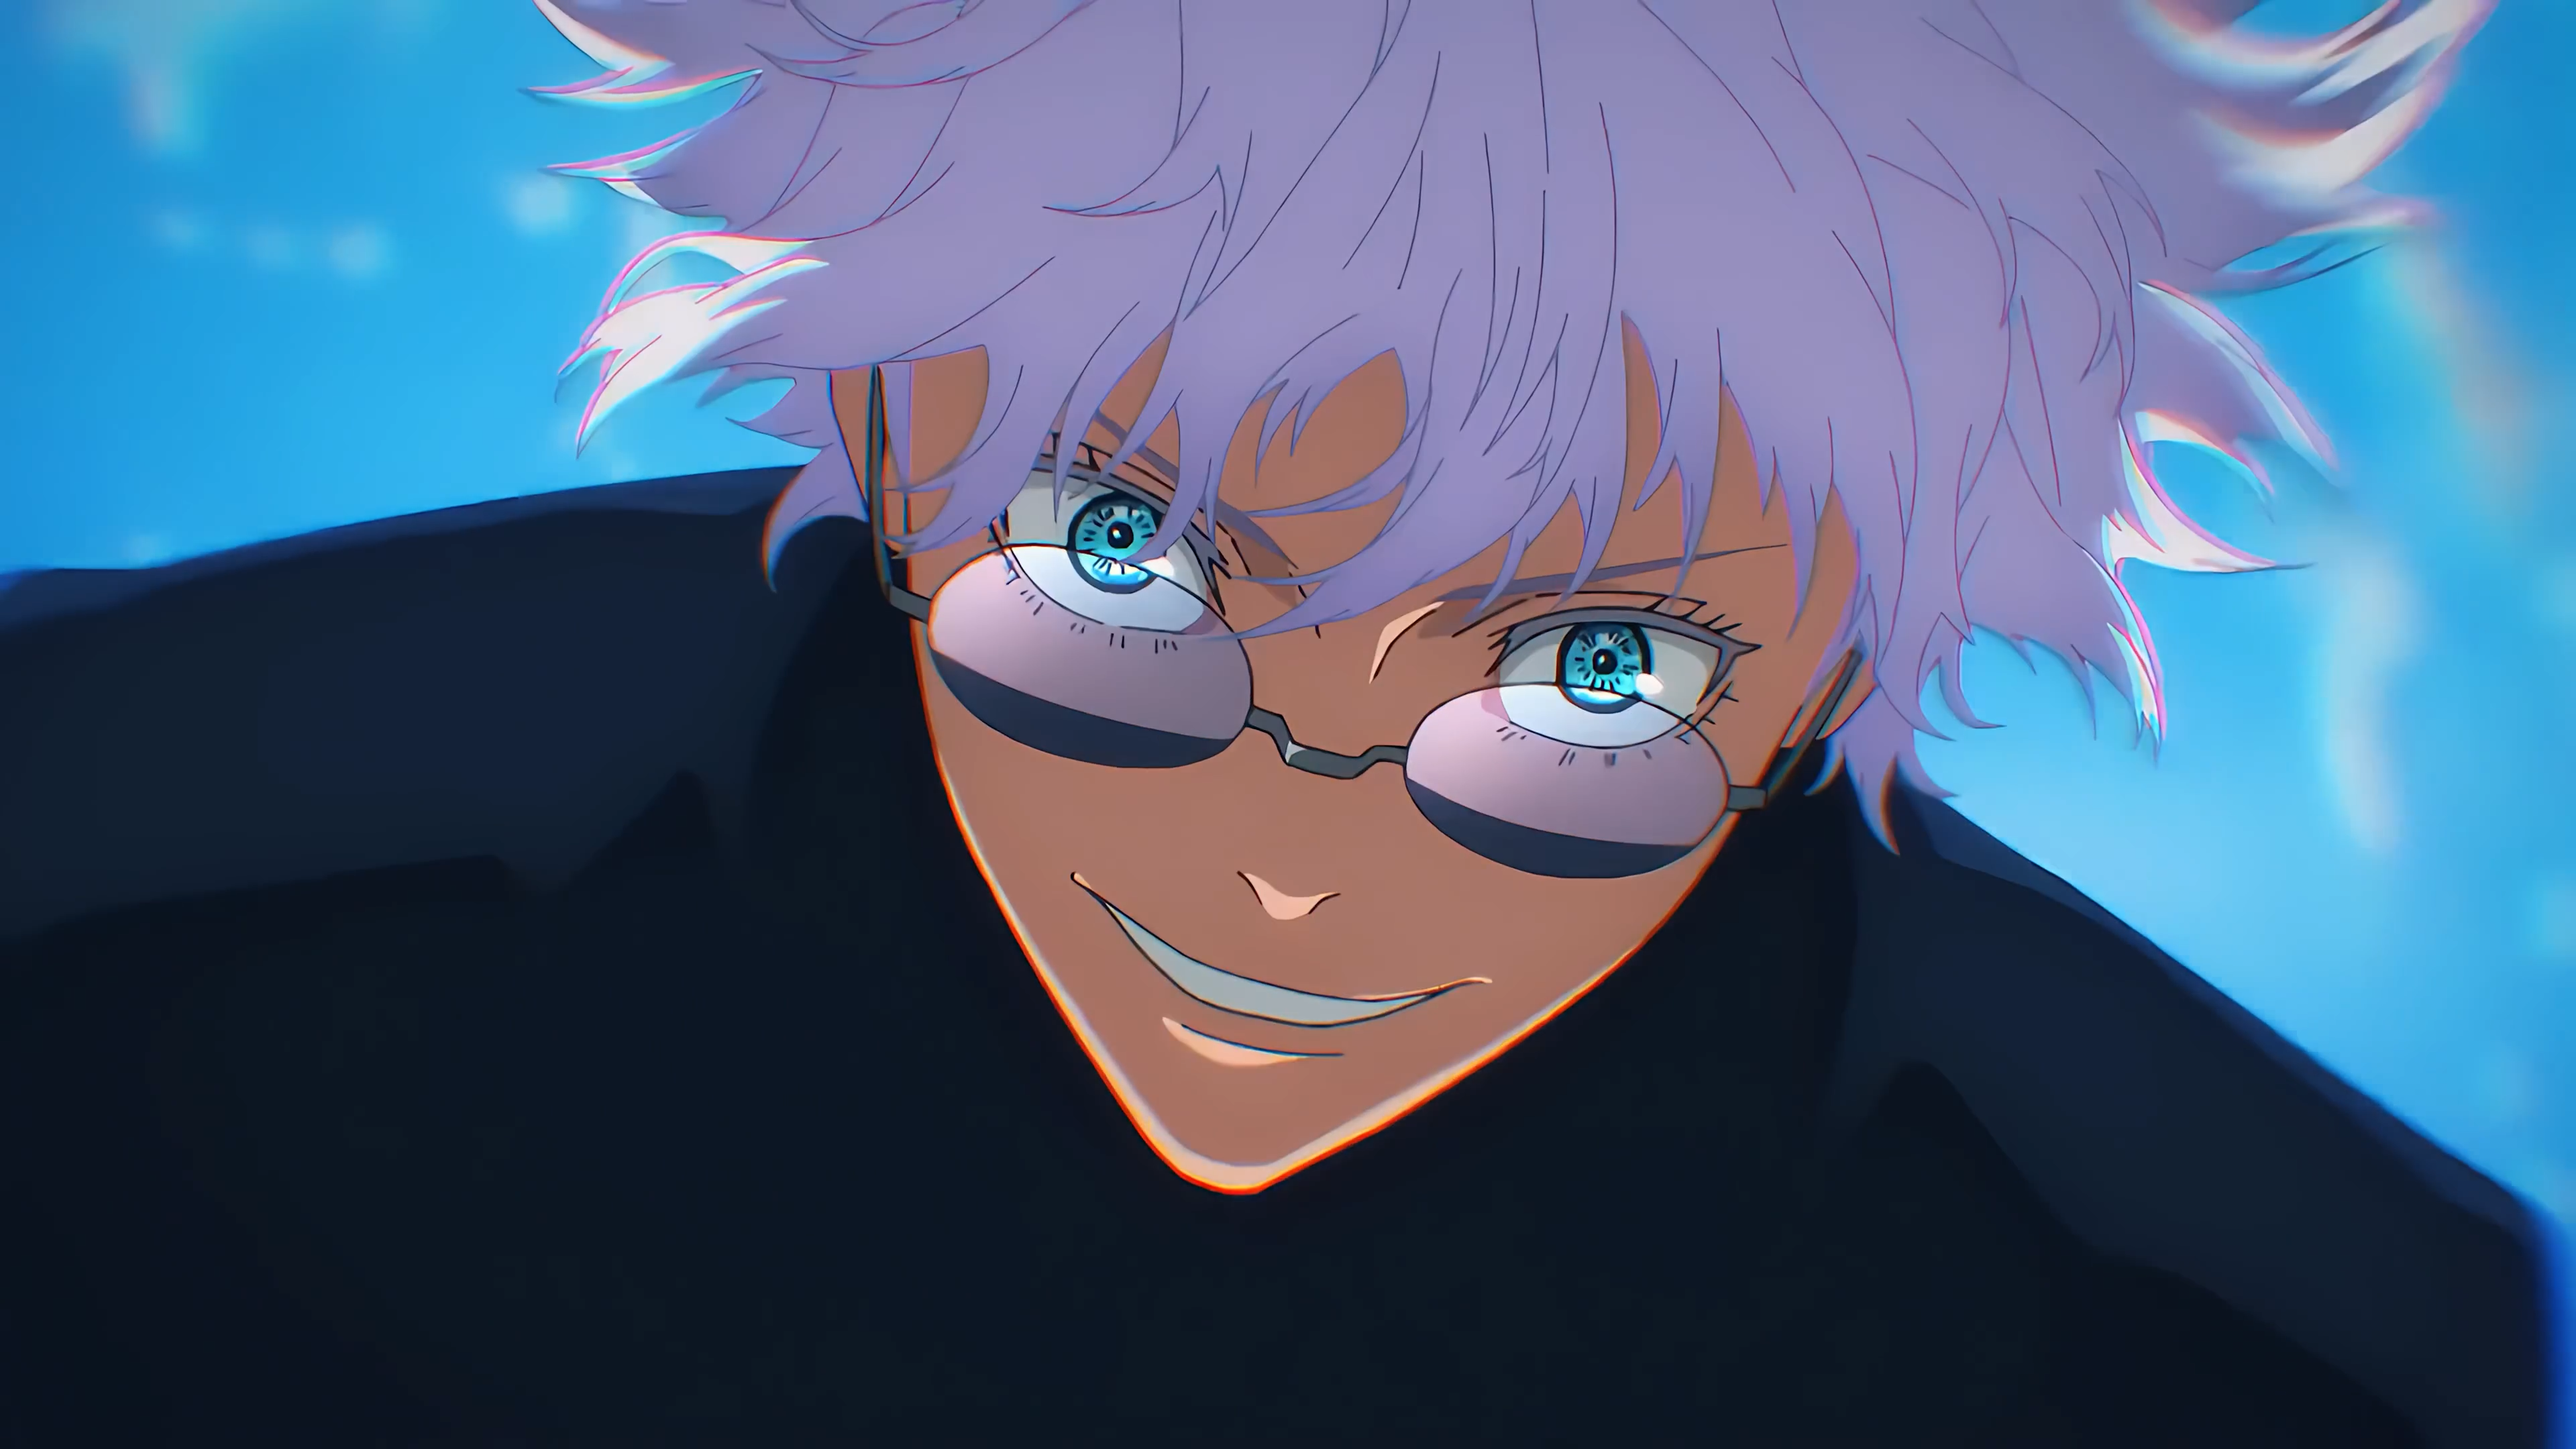 Anime 3840x2160 Jujutsu Kaisen Satoru Gojo anime Anime screenshot anime boys smiling sunglasses sky looking at viewer